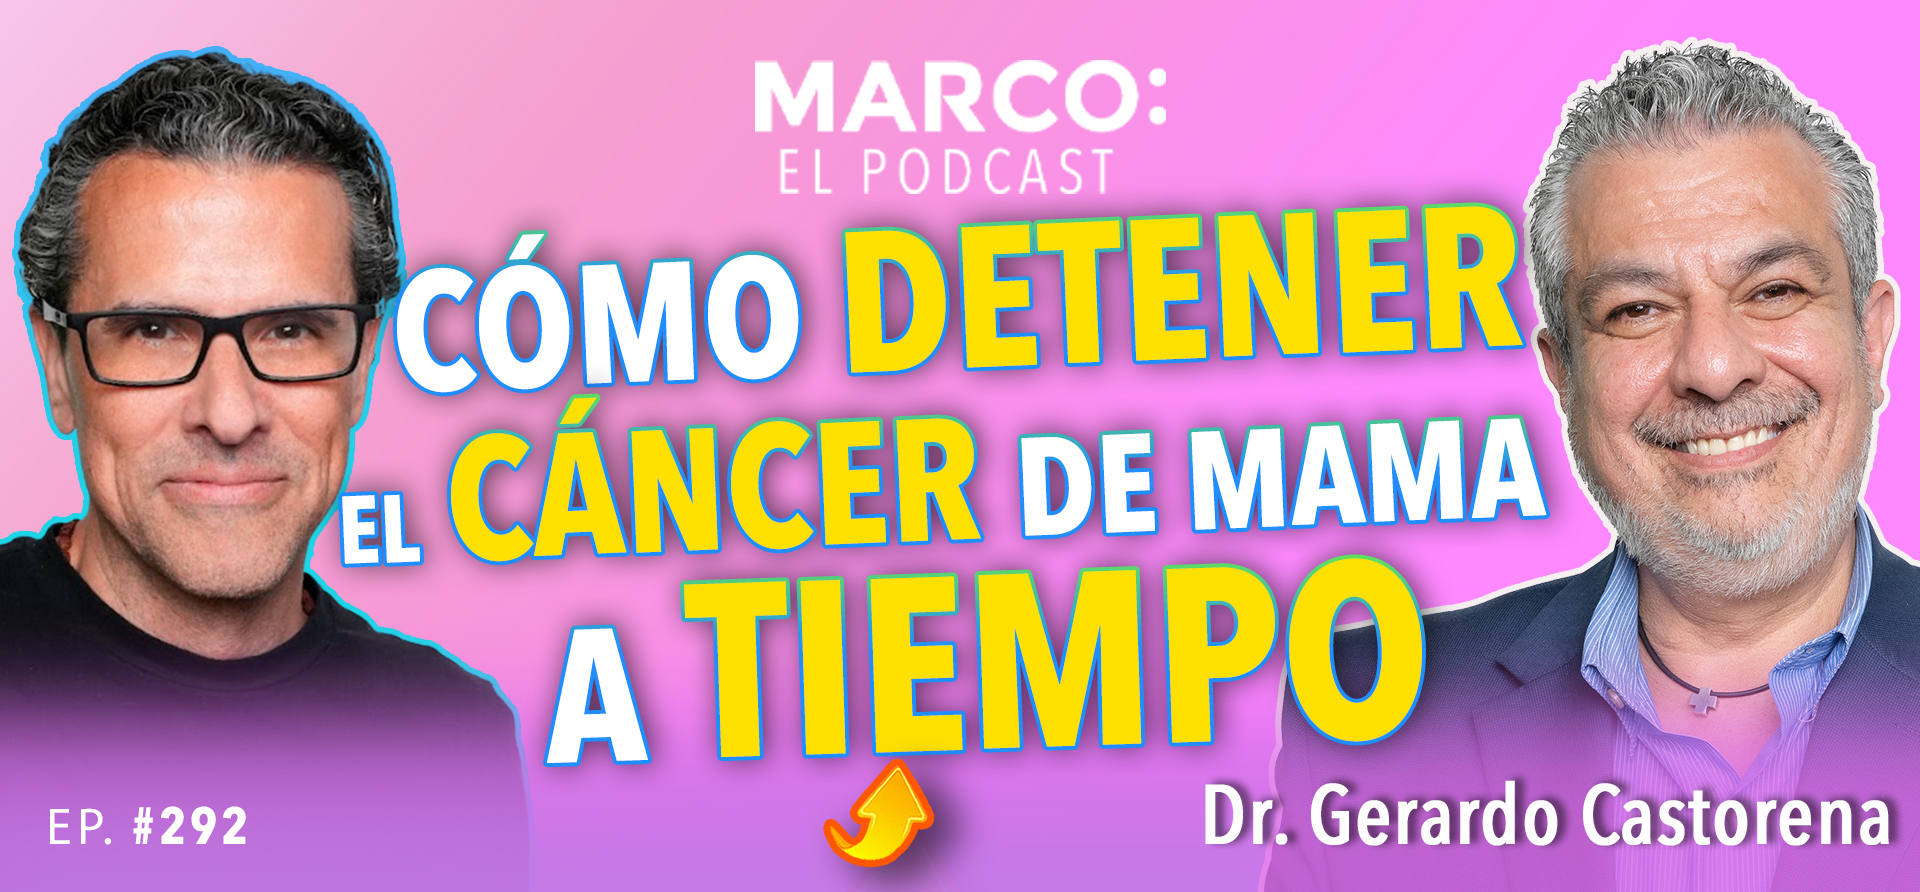 Cómo detener el cáncer de mama Marco El Podcast